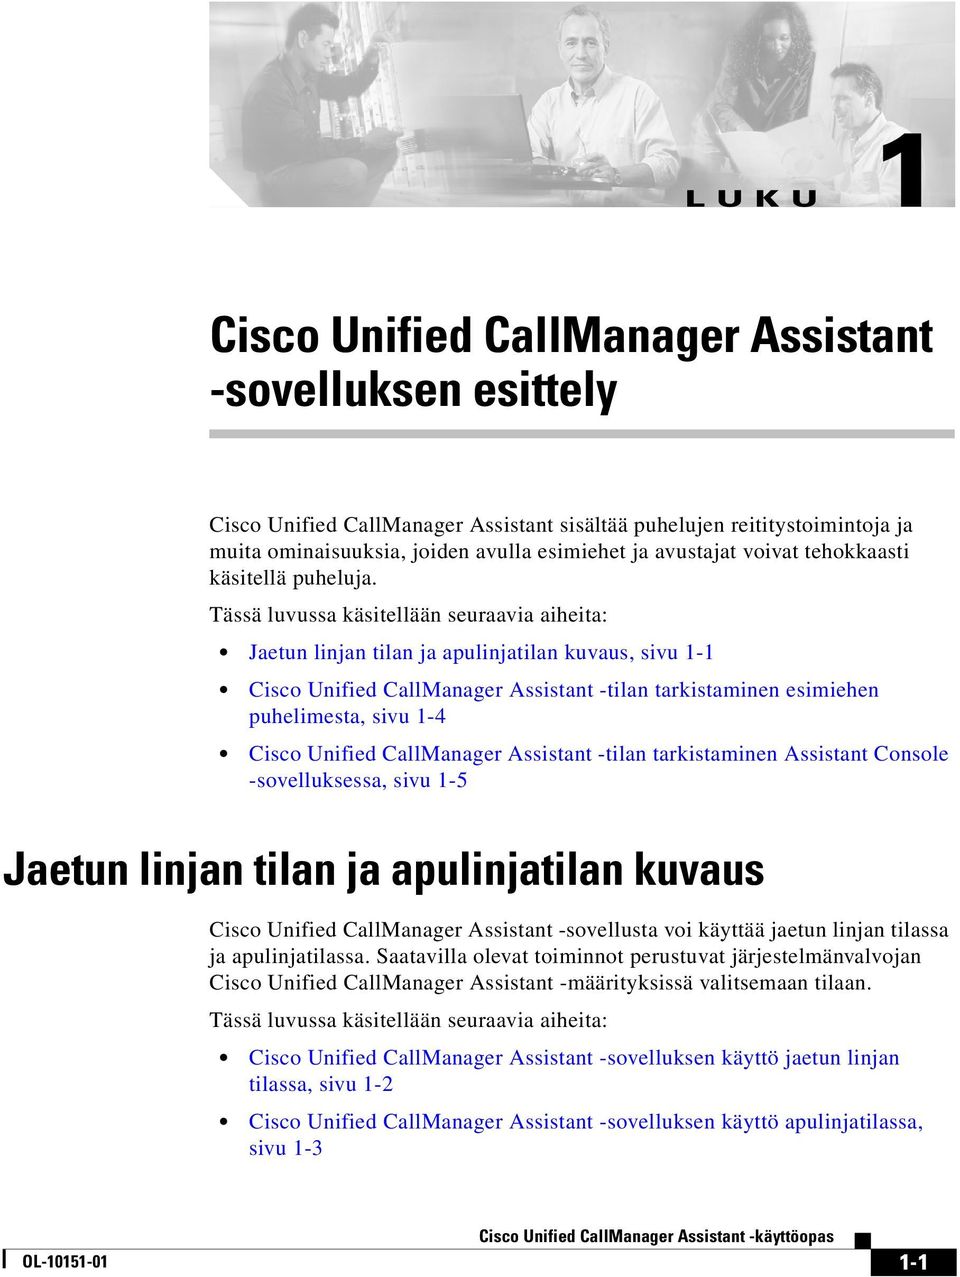 Tässä luvussa käsitellään seuraavia aiheita: Jaetun linjan tilan ja apulinjatilan kuvaus, sivu 1-1 Cisco Unified CallManager Assistant -tilan tarkistaminen esimiehen puhelimesta, sivu 1-4 Cisco